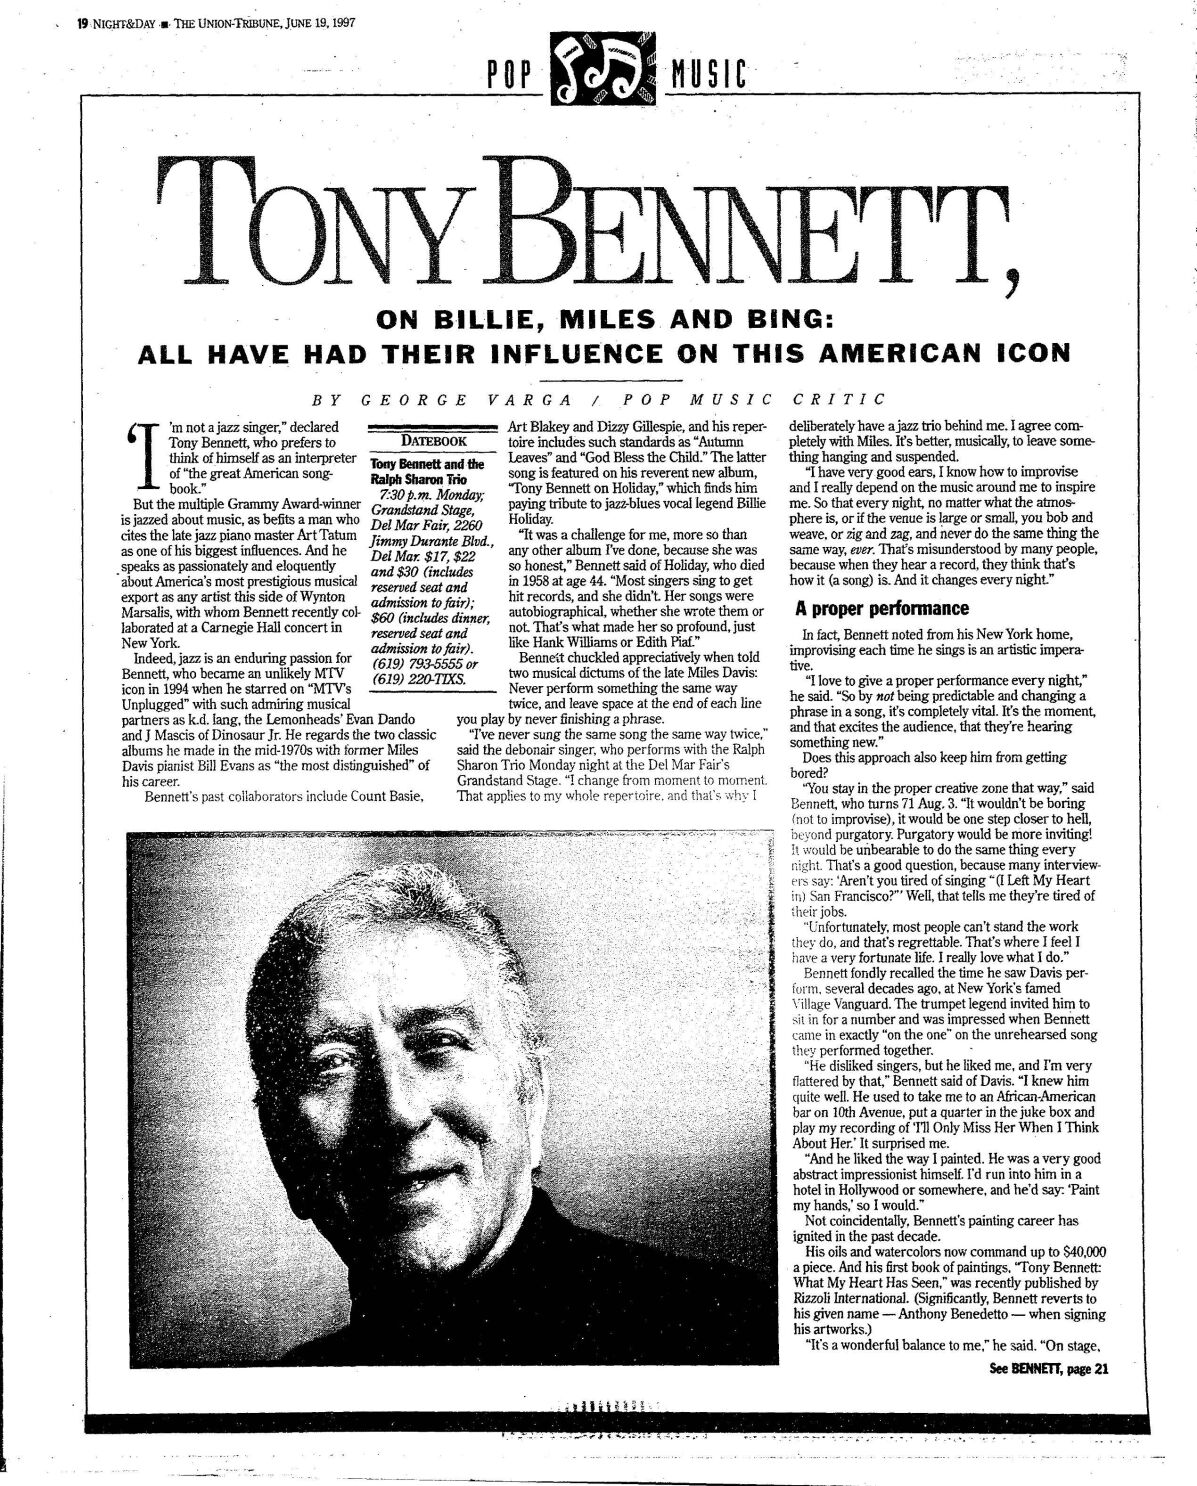 III. Rise to Fame: Tony Bennett's Breakthrough